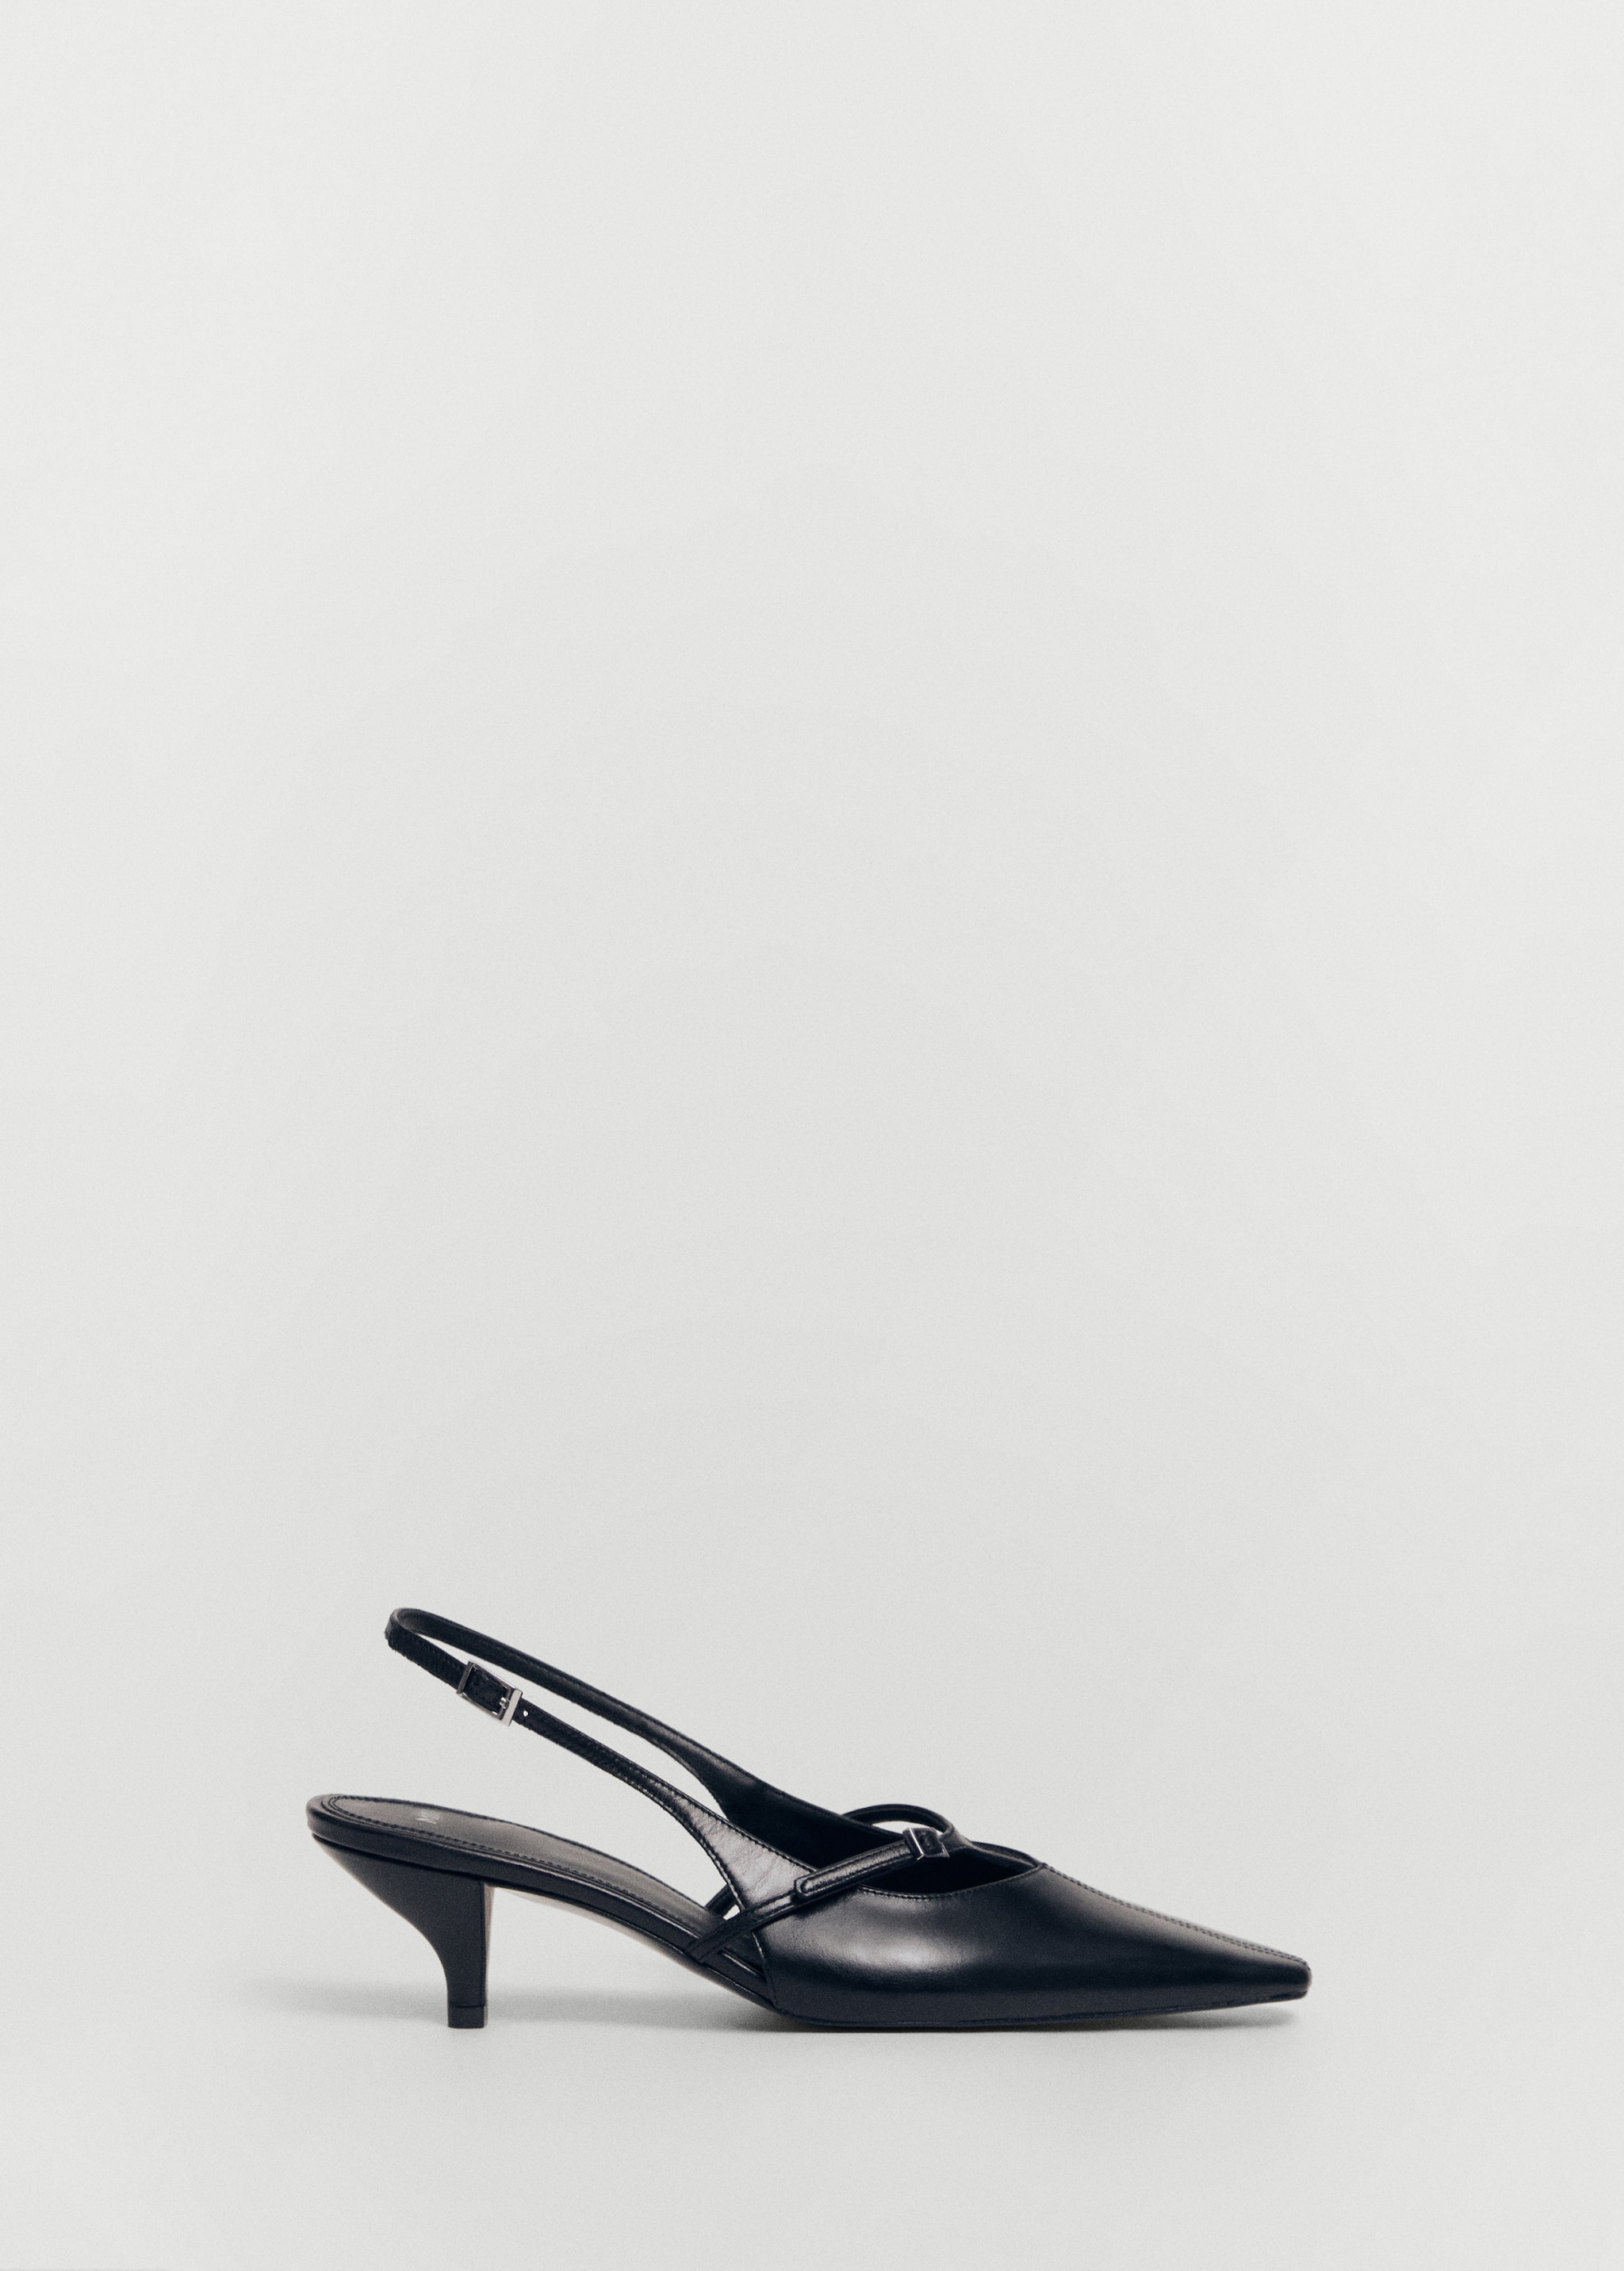 Zapato tacón piel destalonado hebillas - Artículo sin modelo